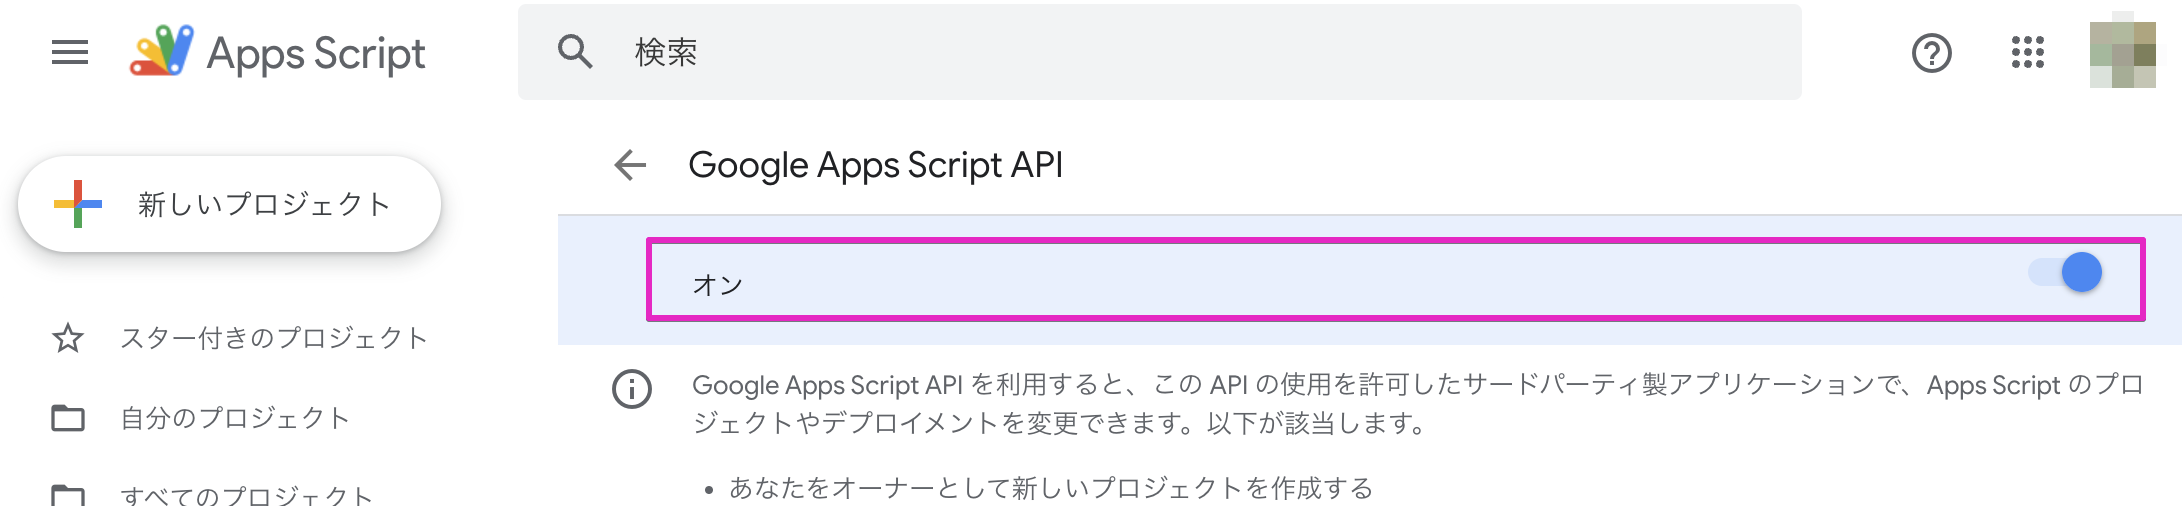 Google Apps Script API